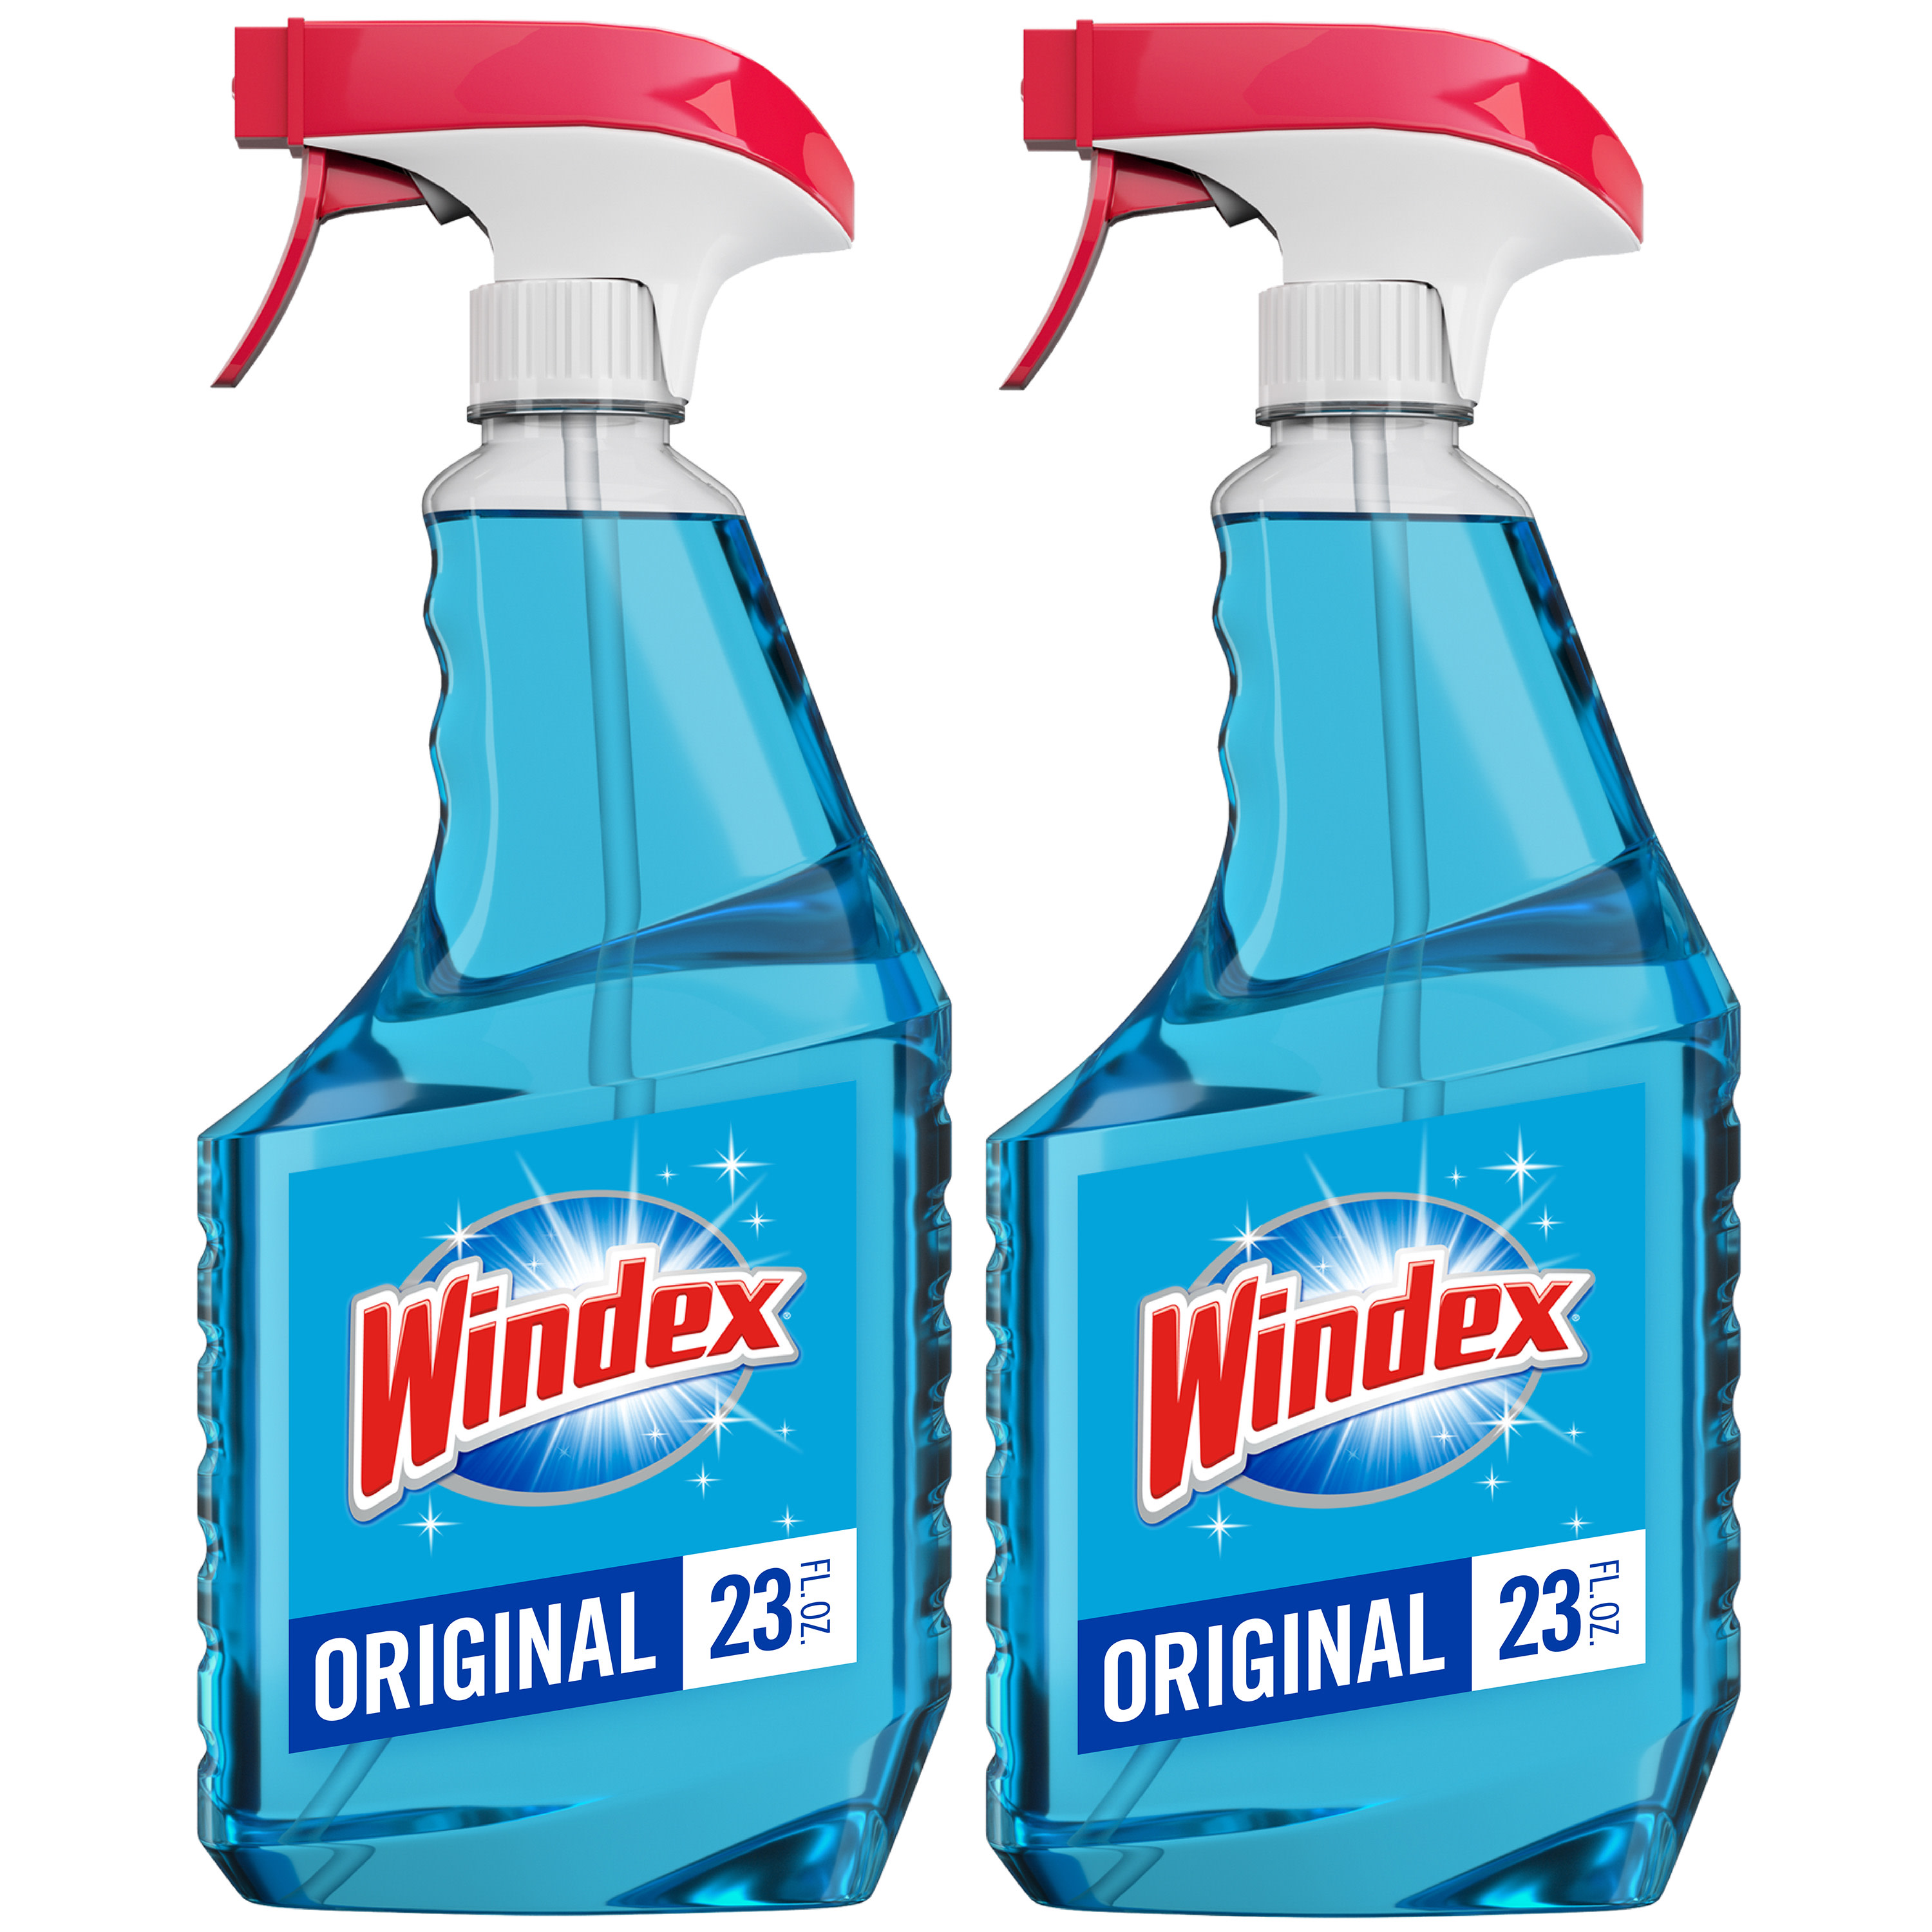 Windex Glass Cleaner, Original Blue, Spray Bottle, 23 fl oz (Pack of 2) - image 1 of 13